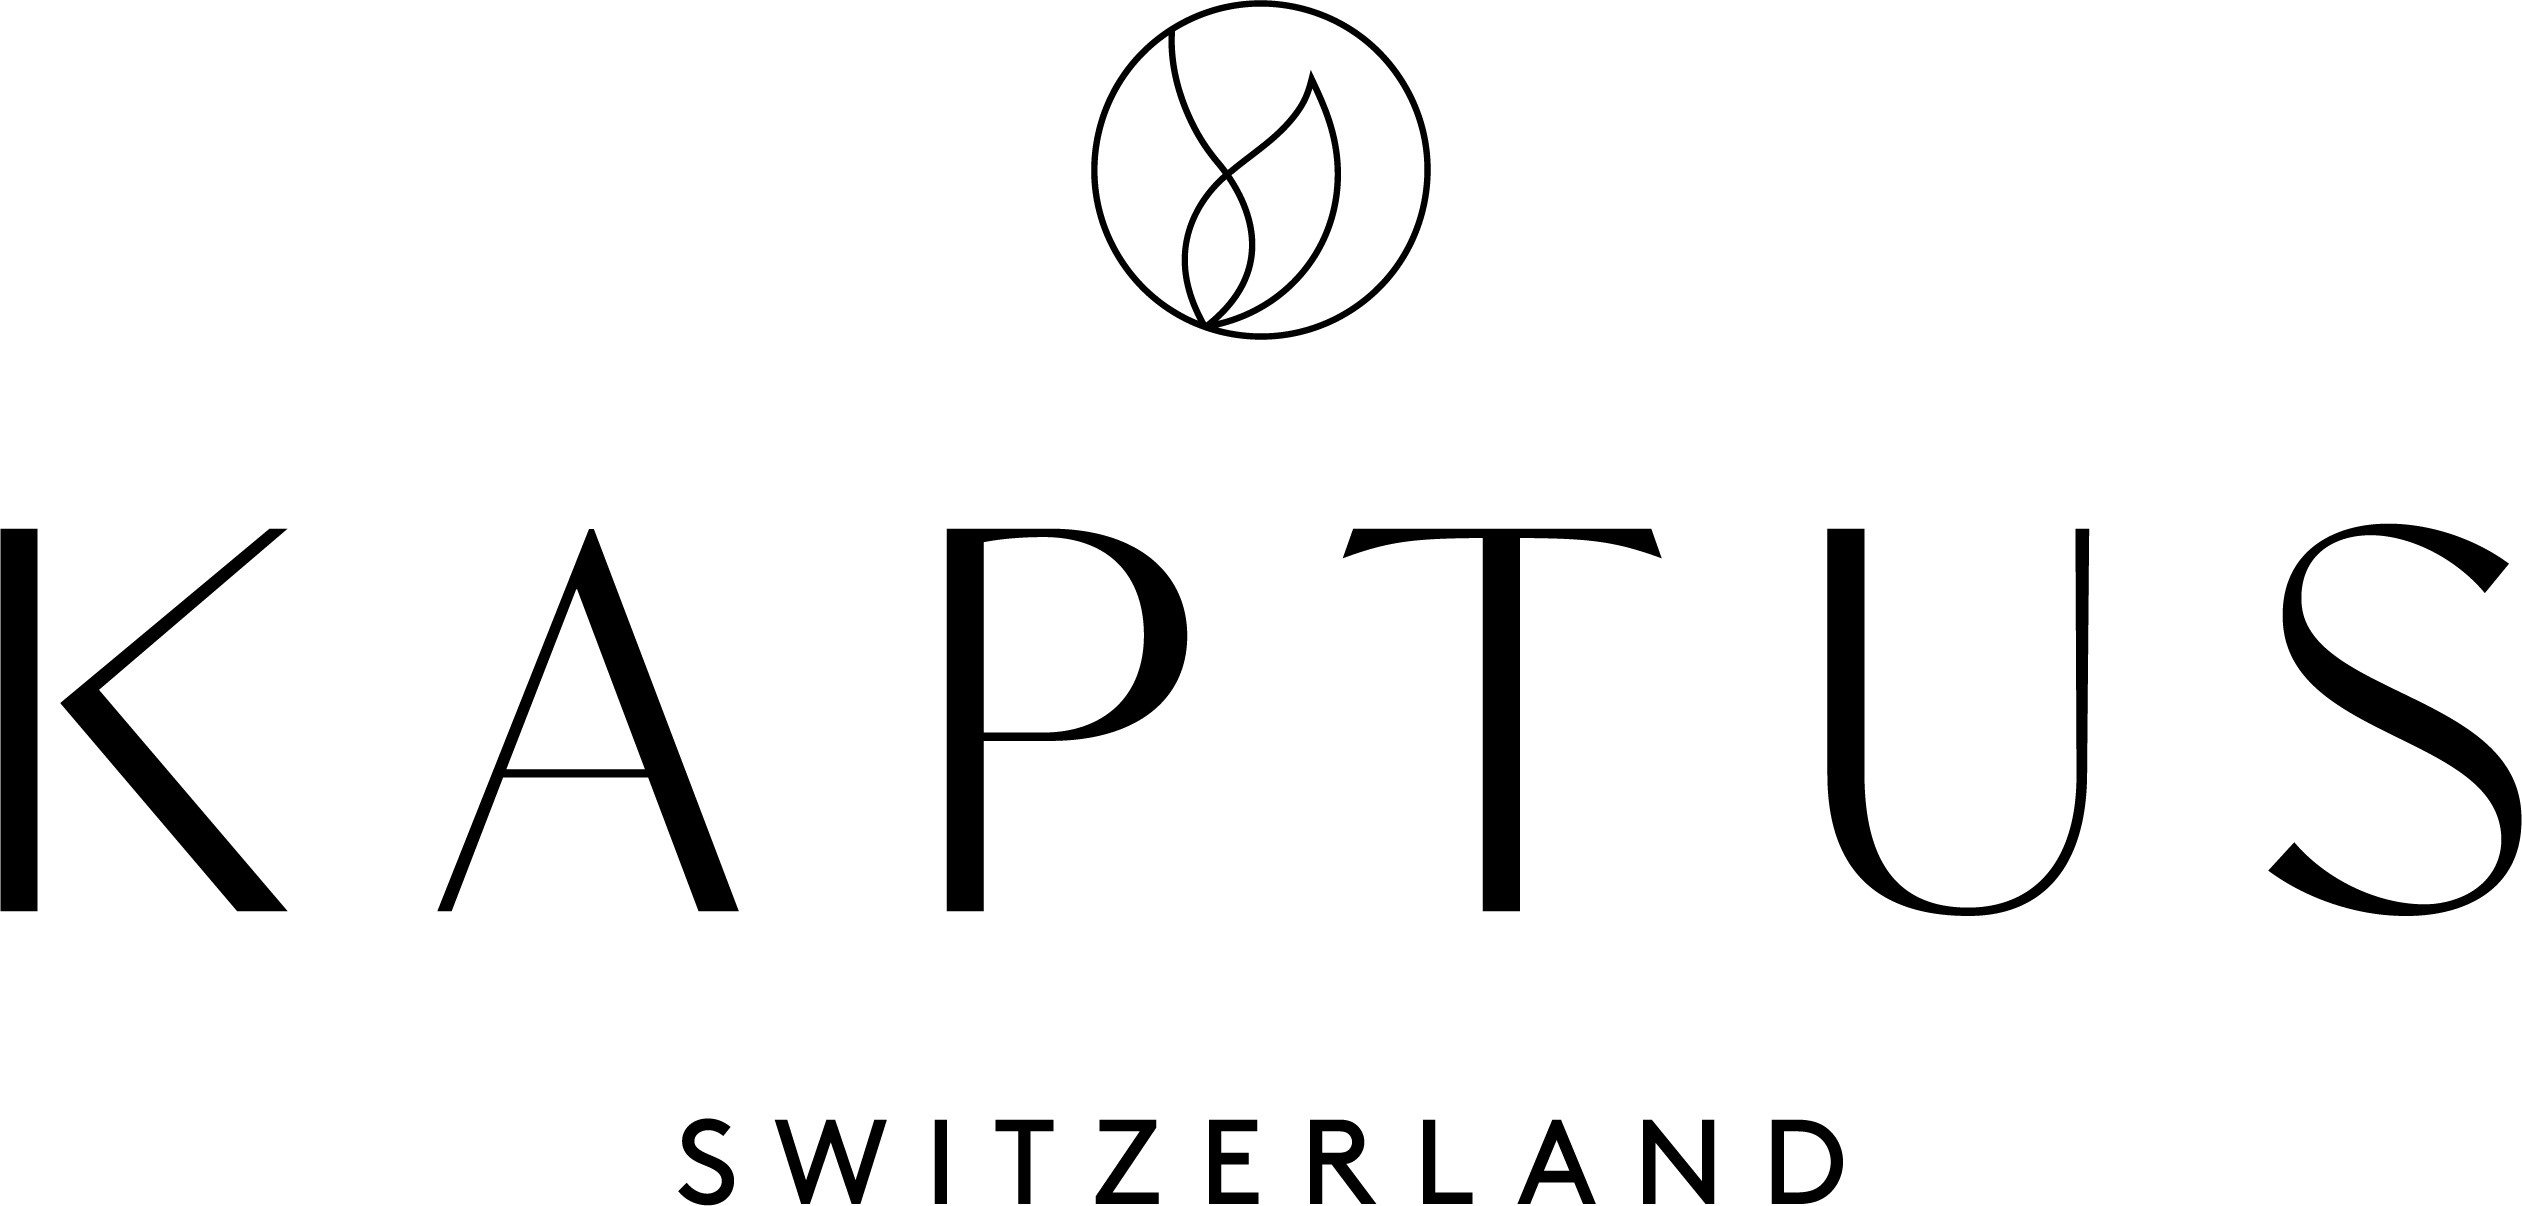 KAPTUS NATURE logo